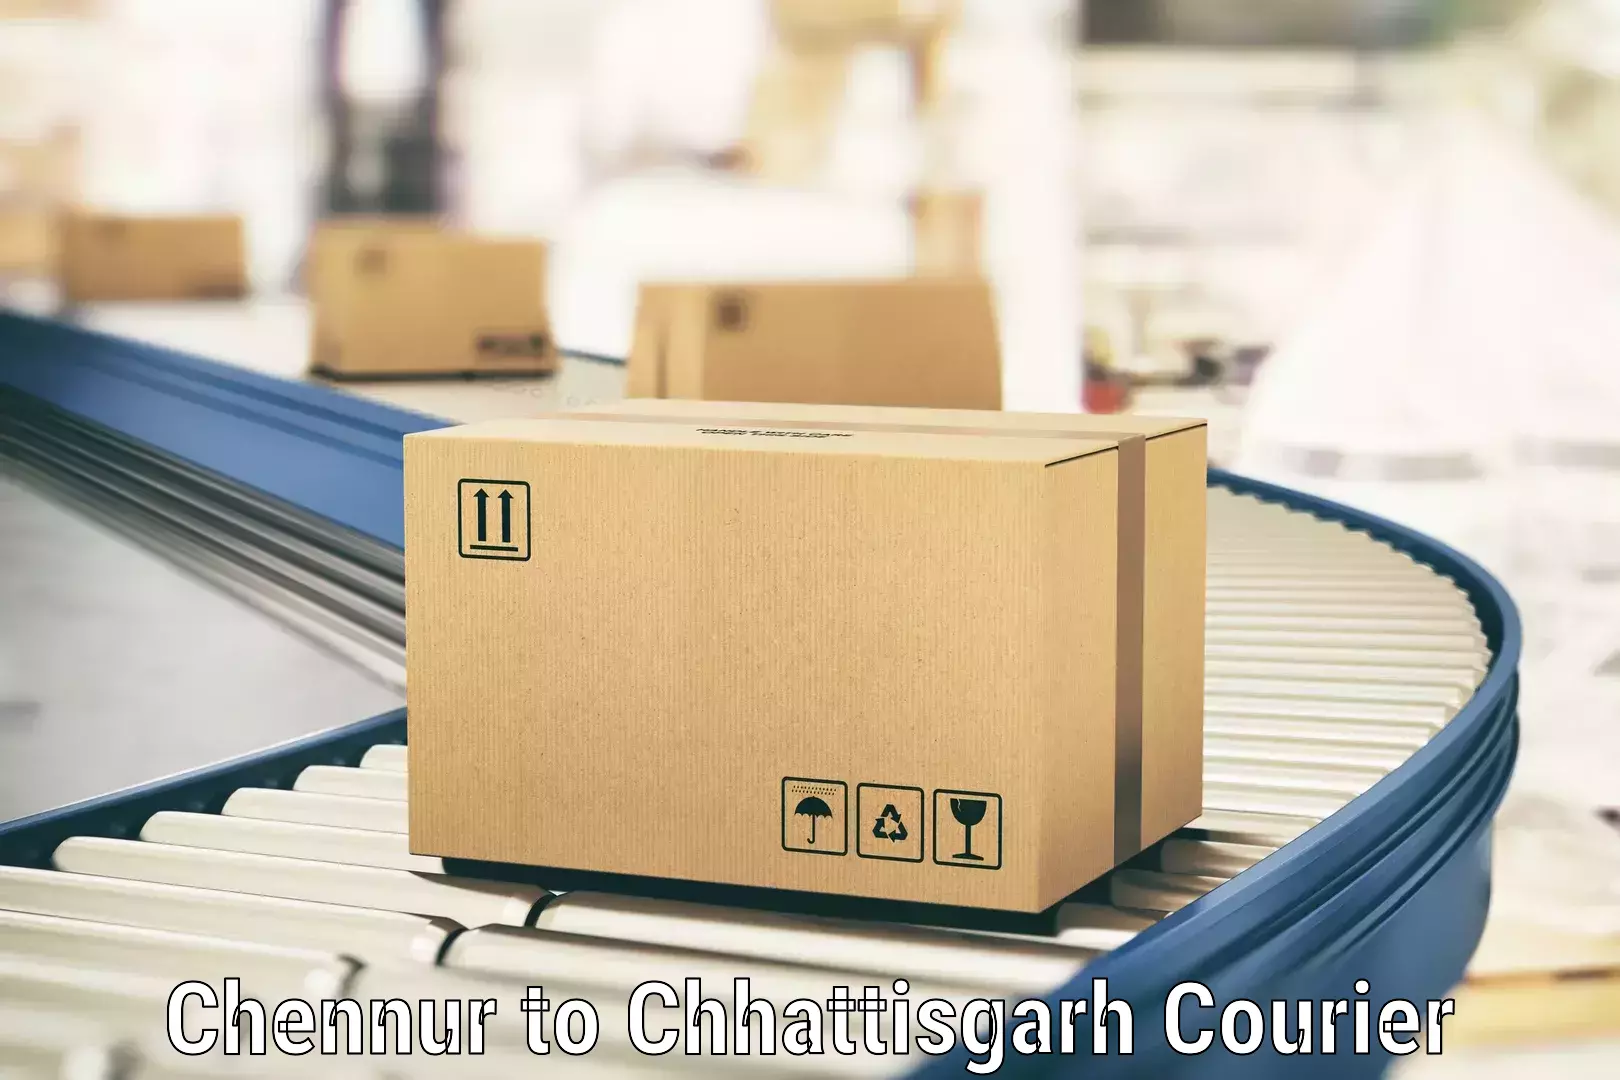 Efficient parcel service Chennur to Khairagarh